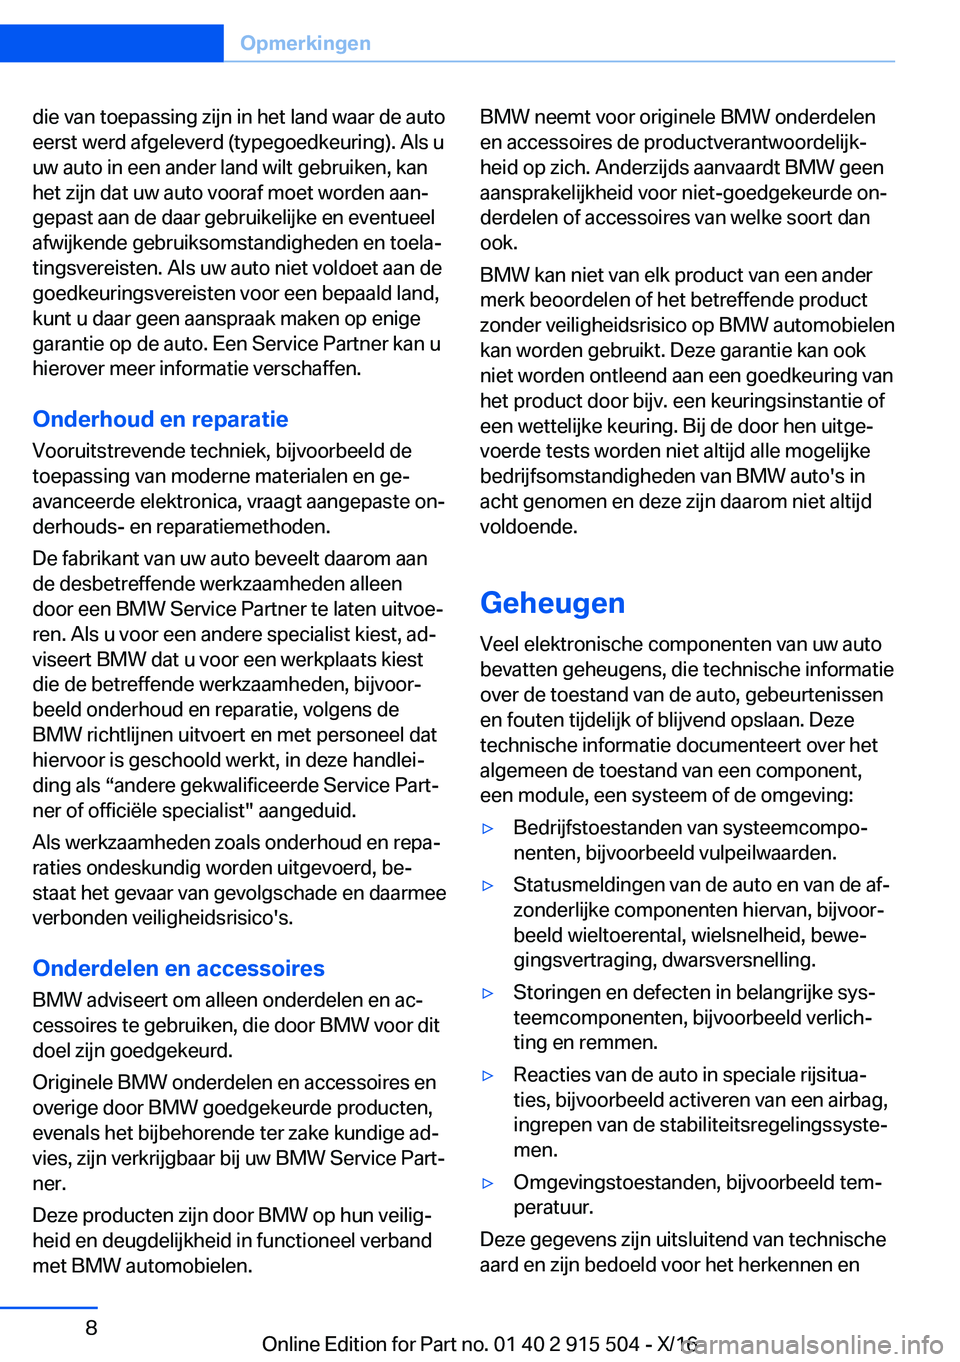 BMW X5 2017  Instructieboekjes (in Dutch) �d�i�e� �v�a�n� �t�o�e�p�a�s�s�i�n�g� �z�i�j�n� �i�n� �h�e�t� �l�a�n�d� �w�a�a�r� �d�e� �a�u�t�o
�e�e�r�s�t� �w�e�r�d� �a�f�g�e�l�e�v�e�r�d� �(�t�y�p�e�g�o�e�d�k�e�u�r�i�n�g�)�.� �A�l�s� �u �u�w� �a�u